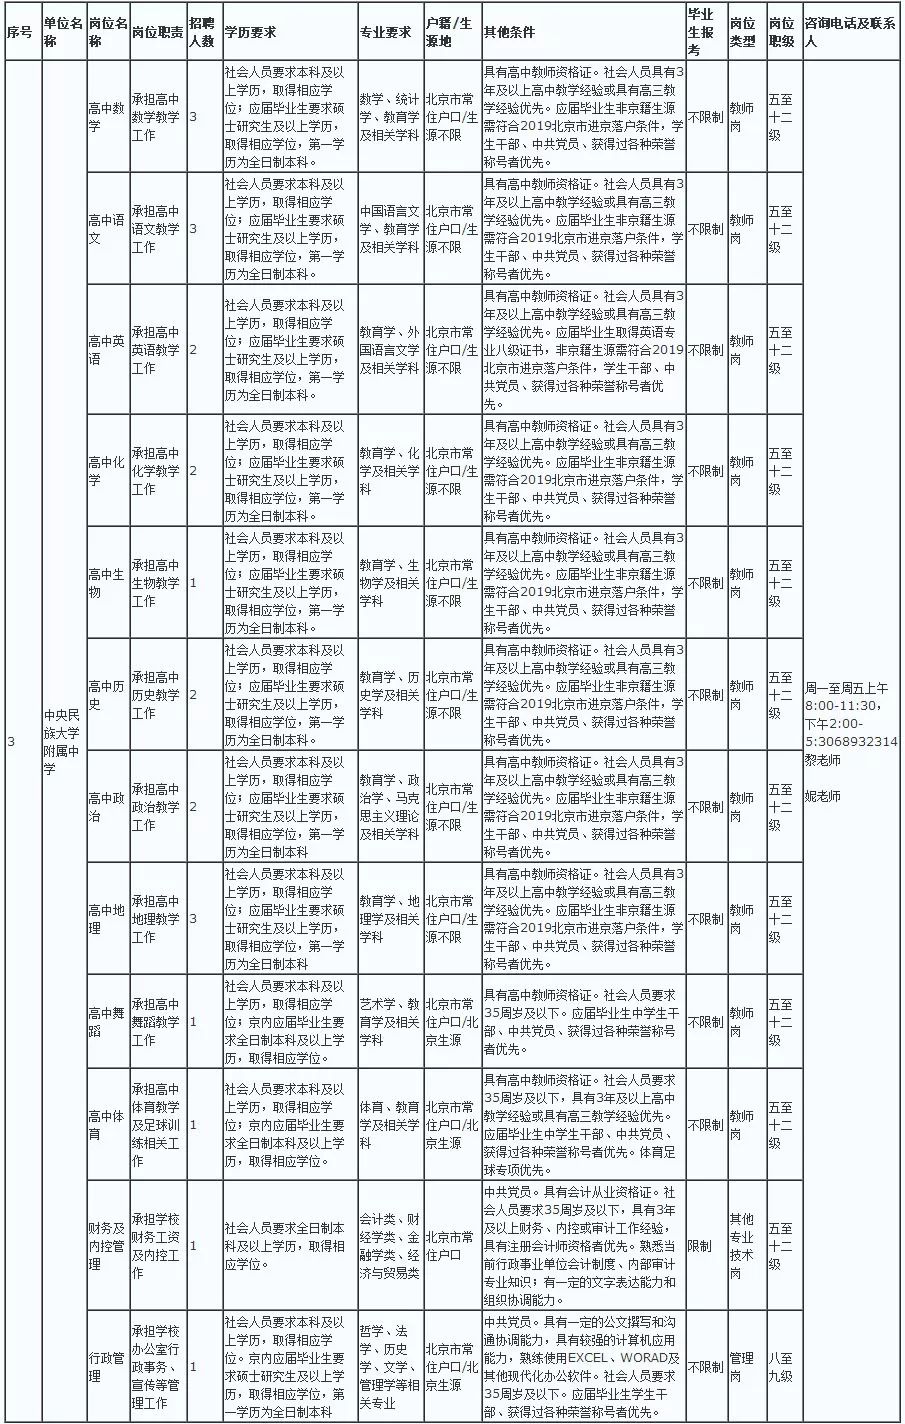 北京铁路局公开招聘292名工作人员,好单位,